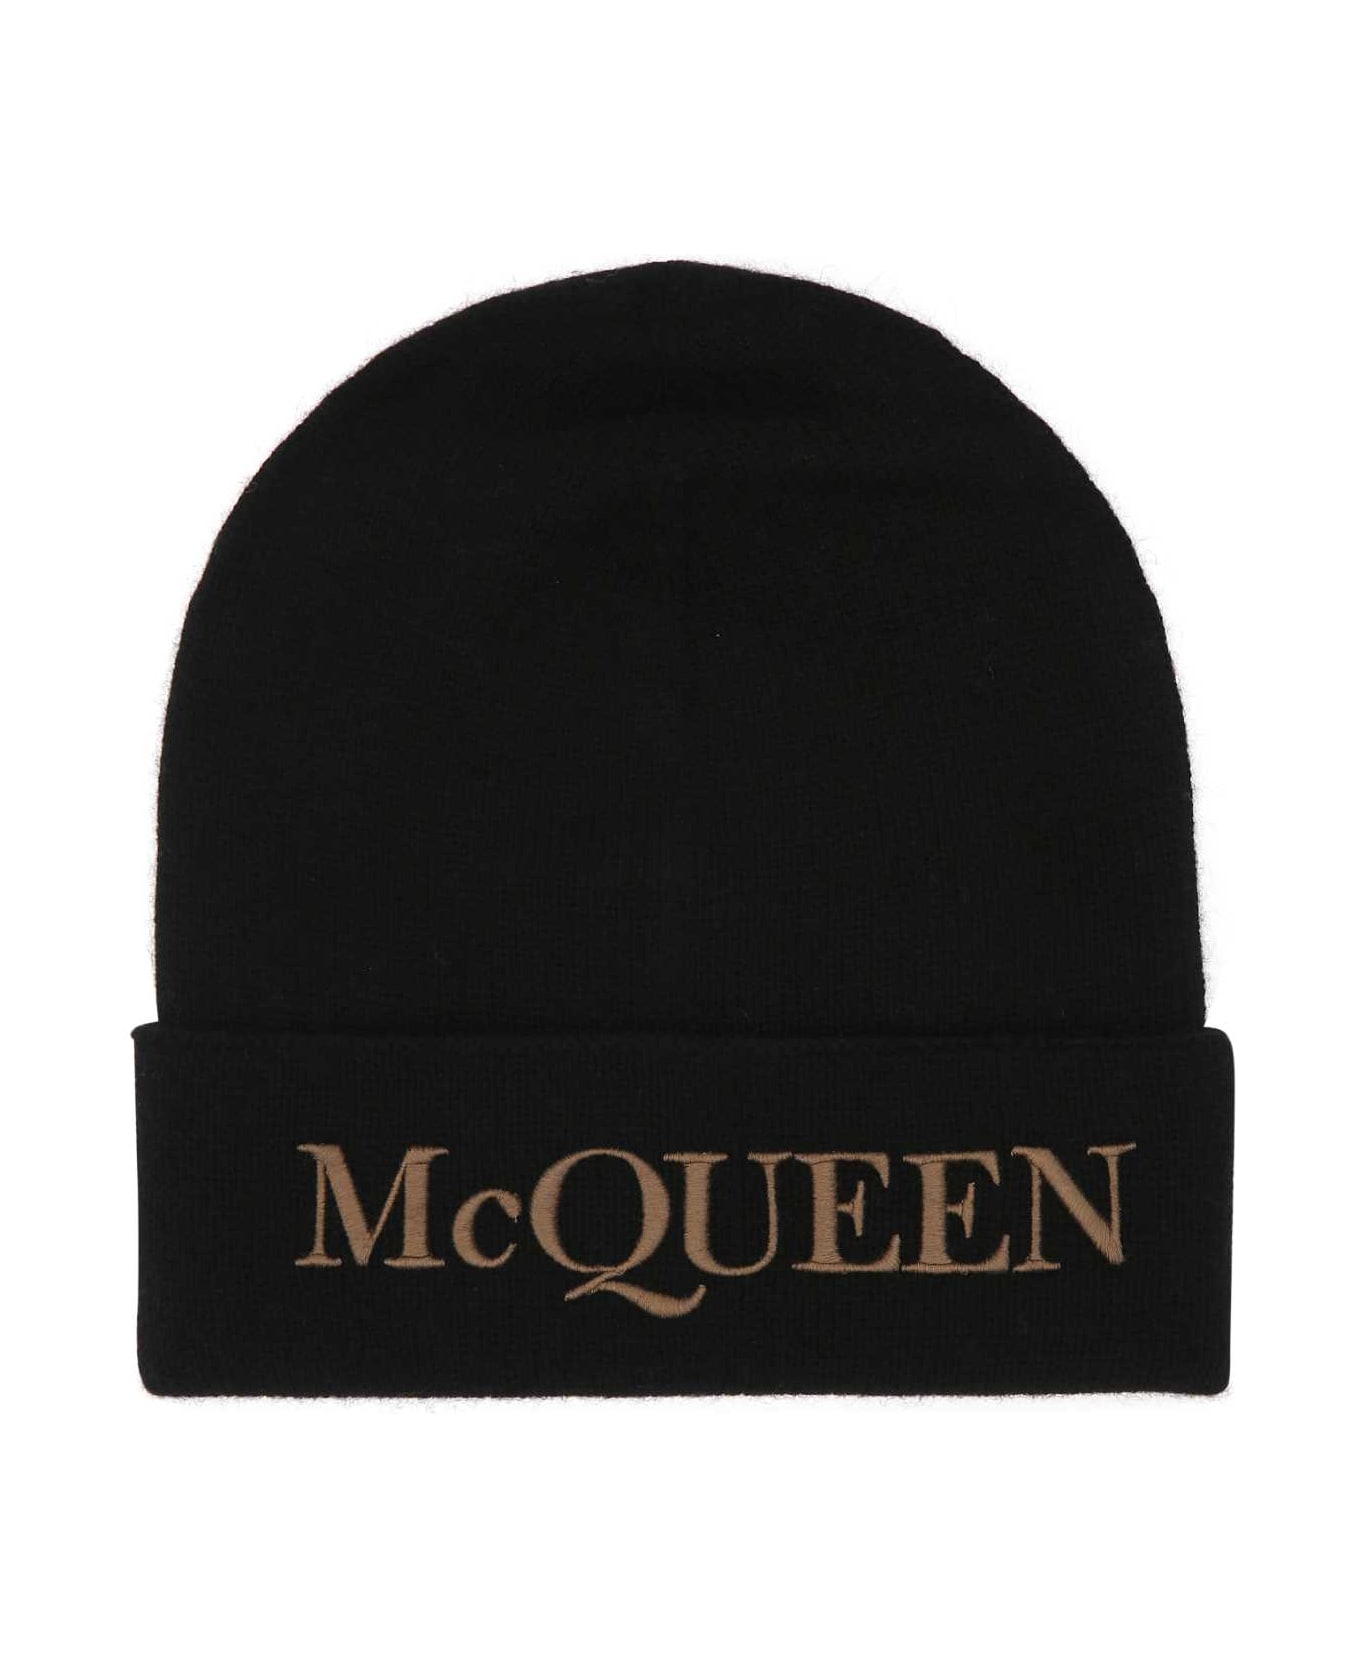 Alexander McQueen Black Cashmere Beanie Hat - 1079